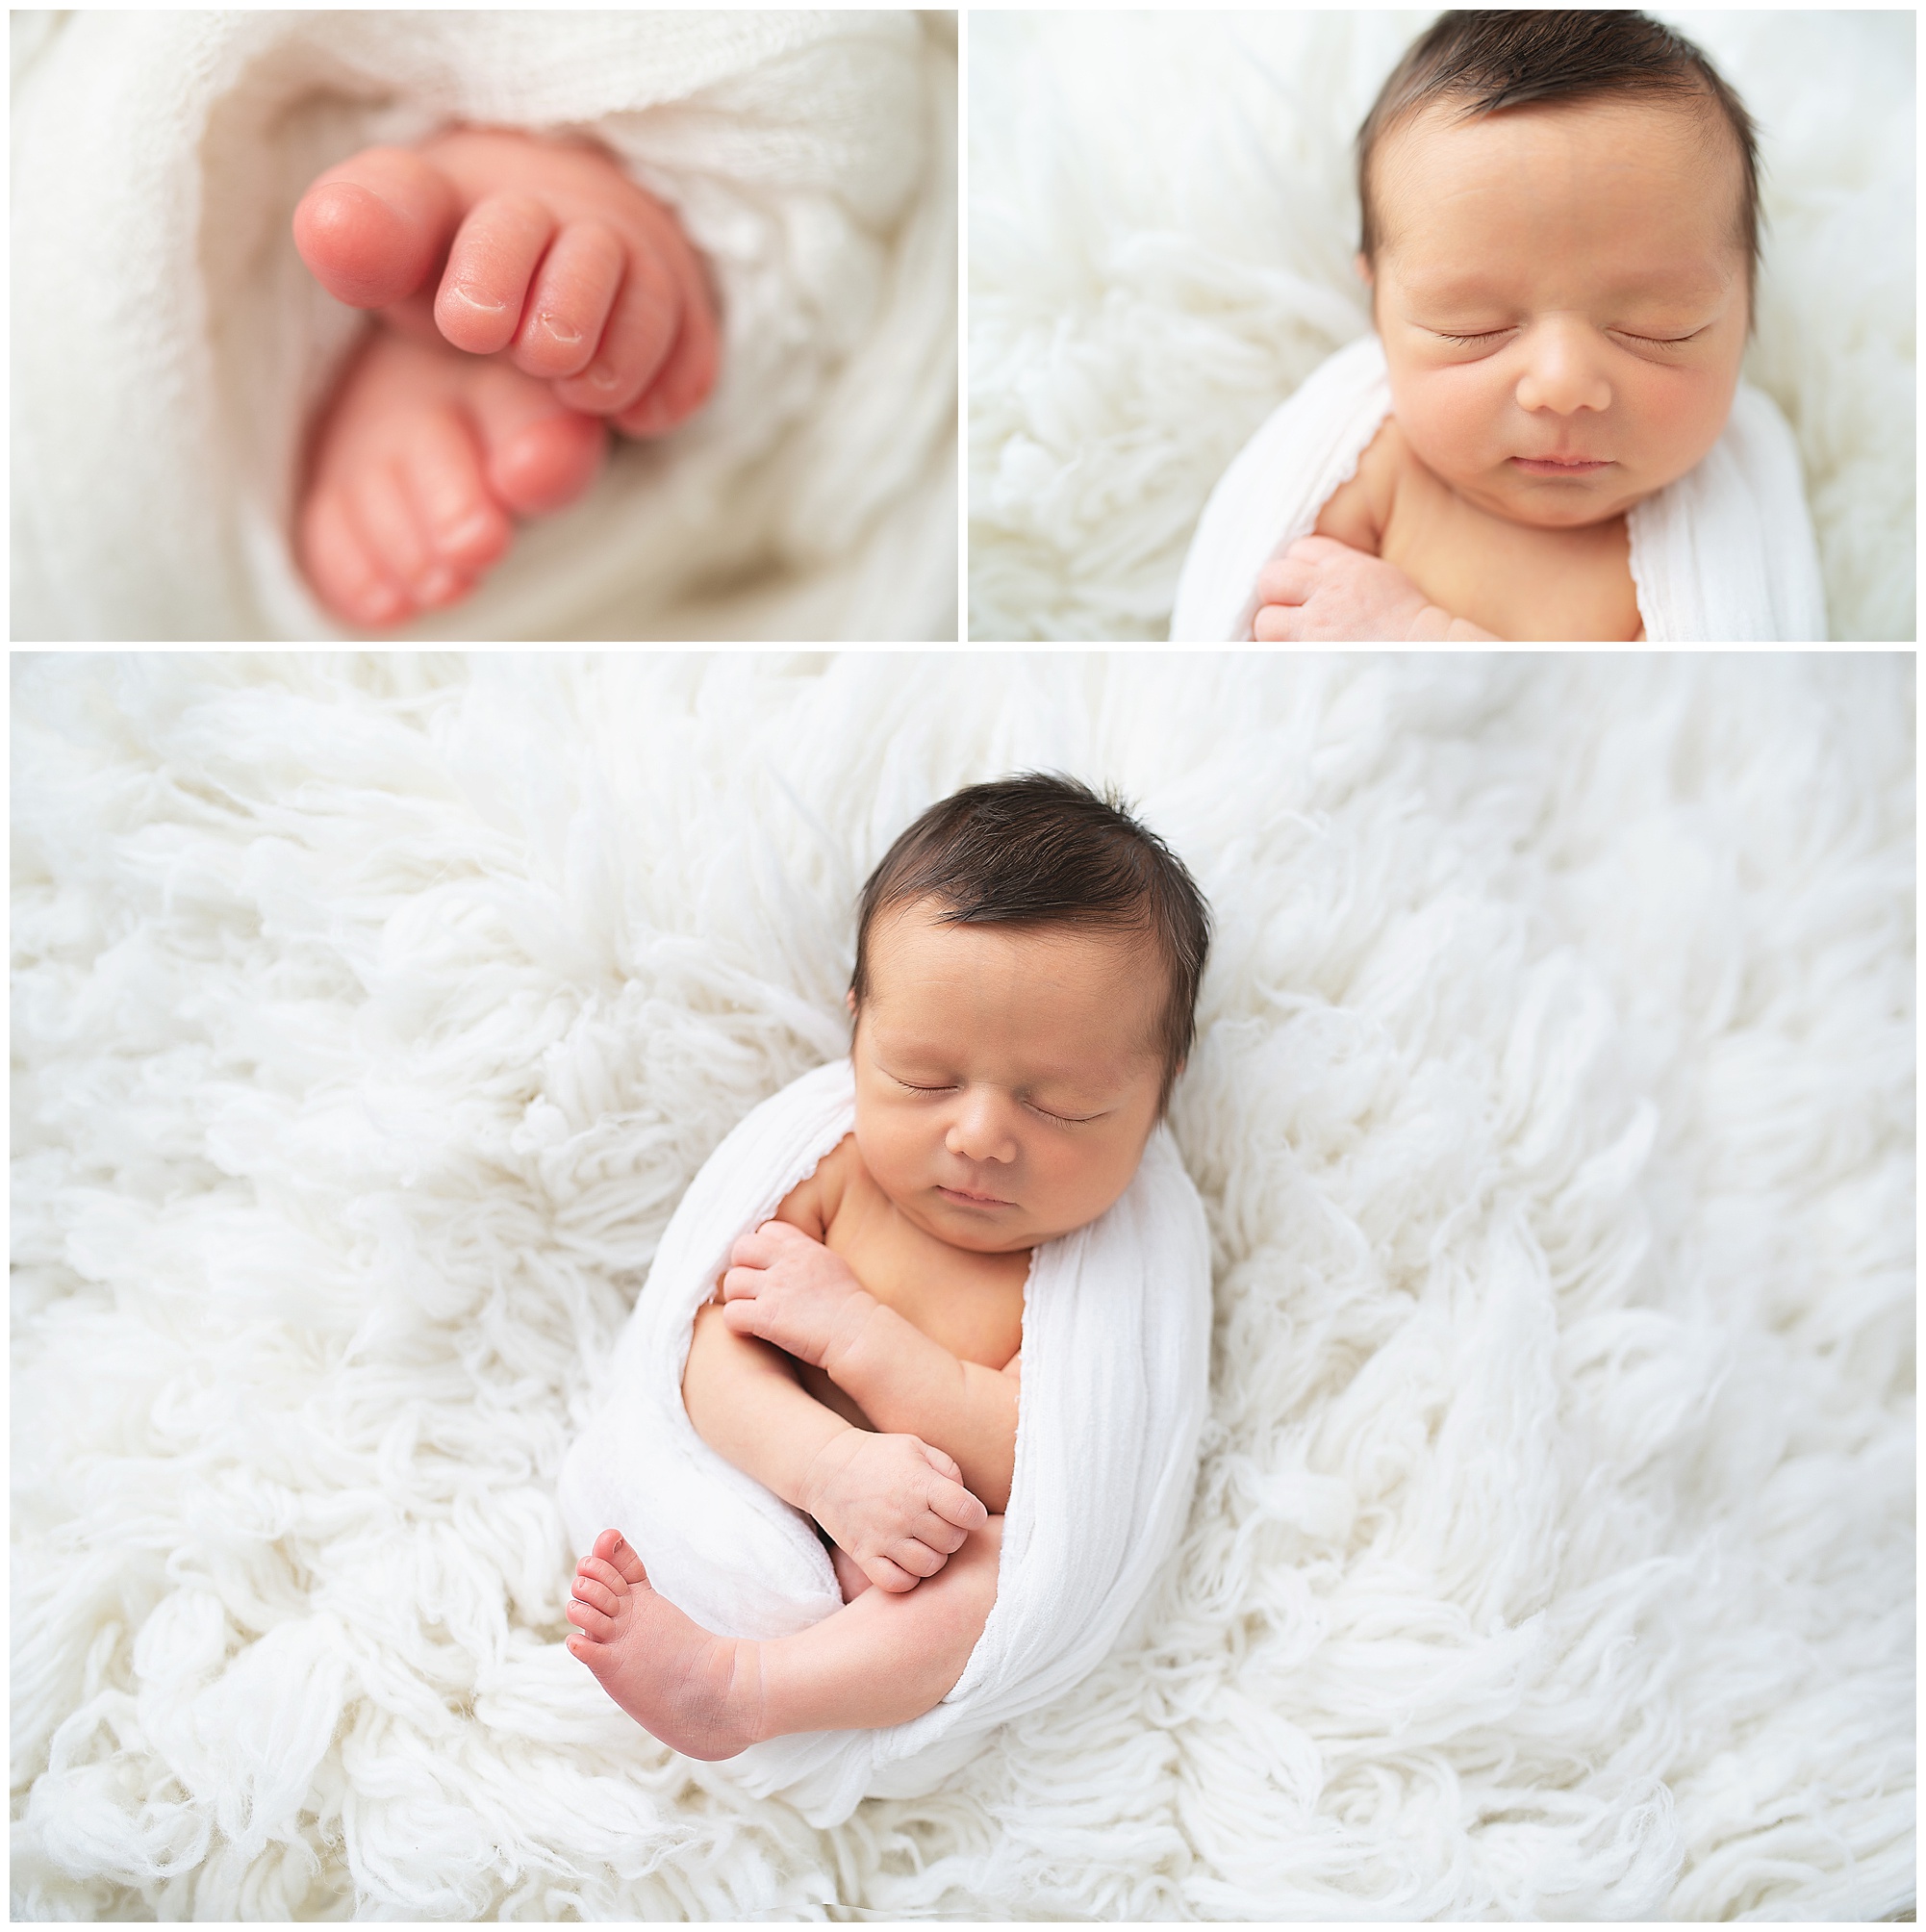 newborn baby toes close up photo